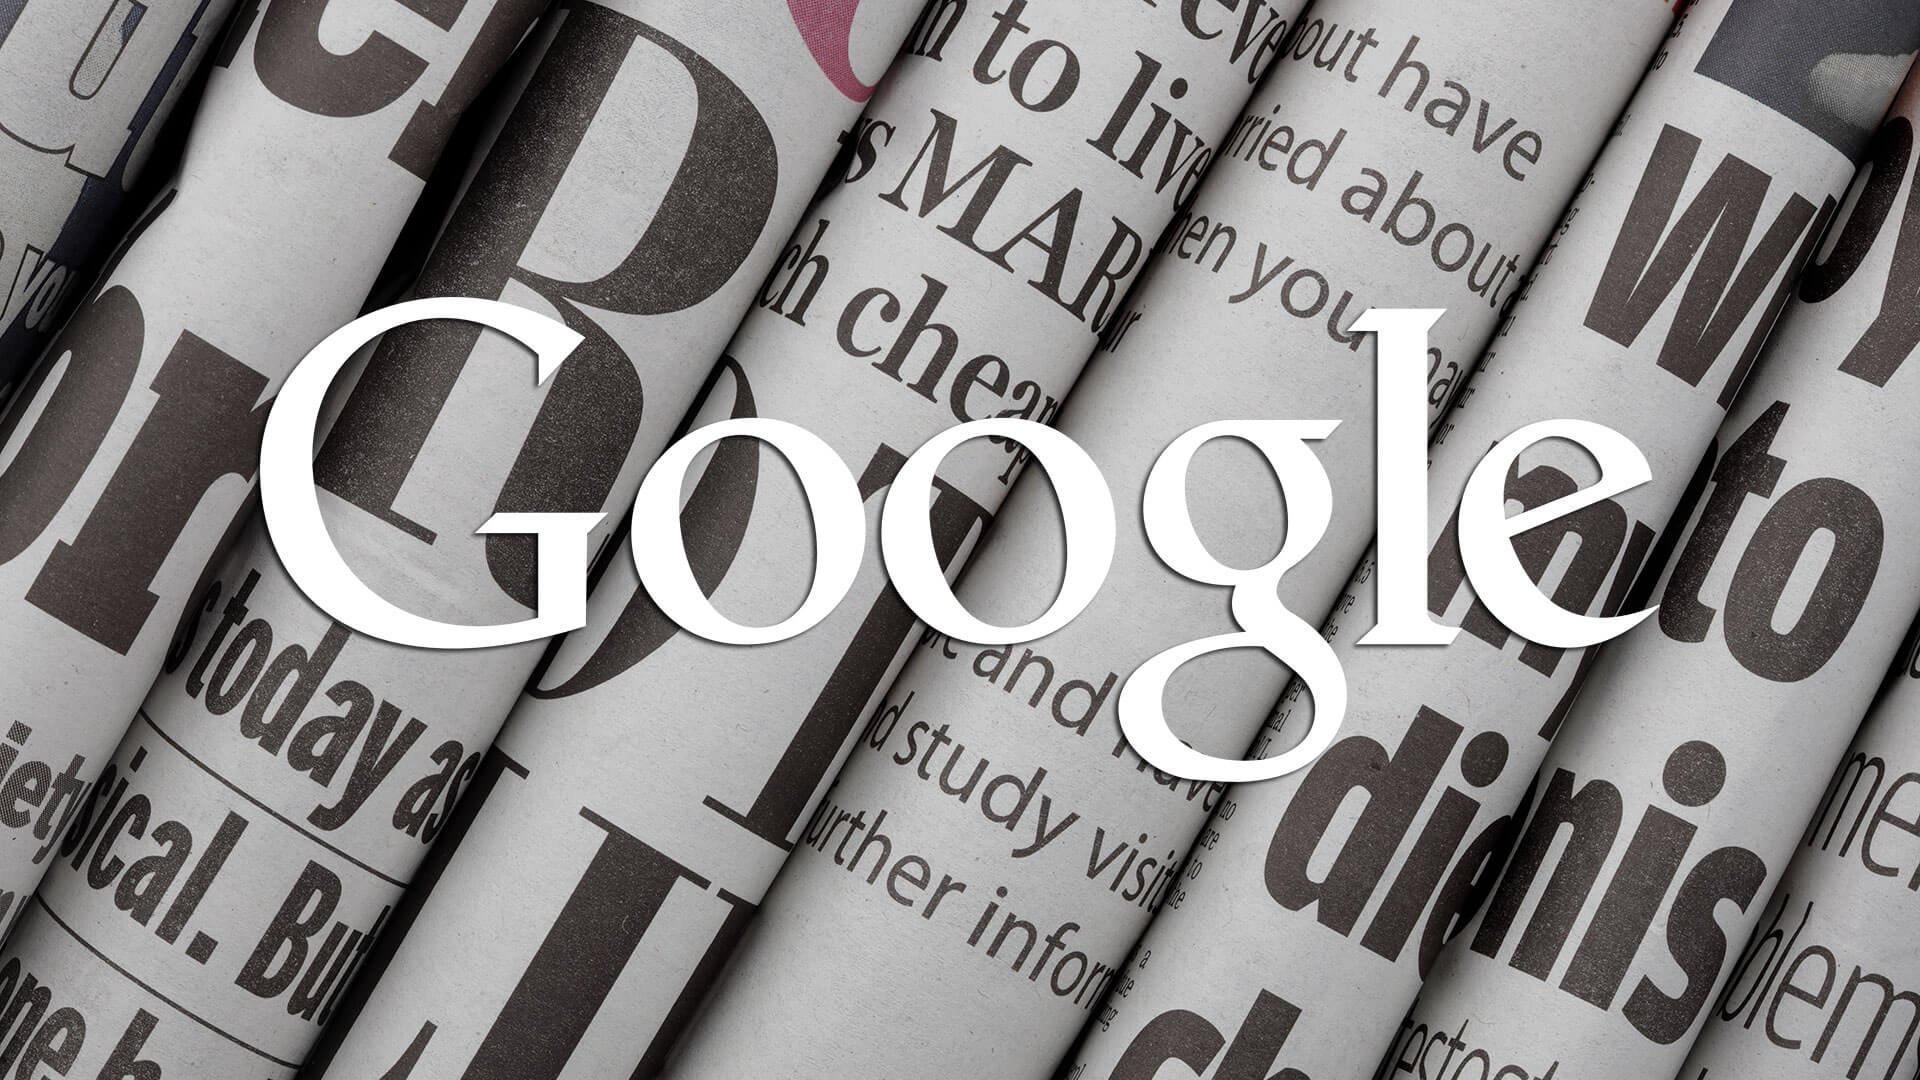 Google News Ss - Google And Newspaper - HD Wallpaper 